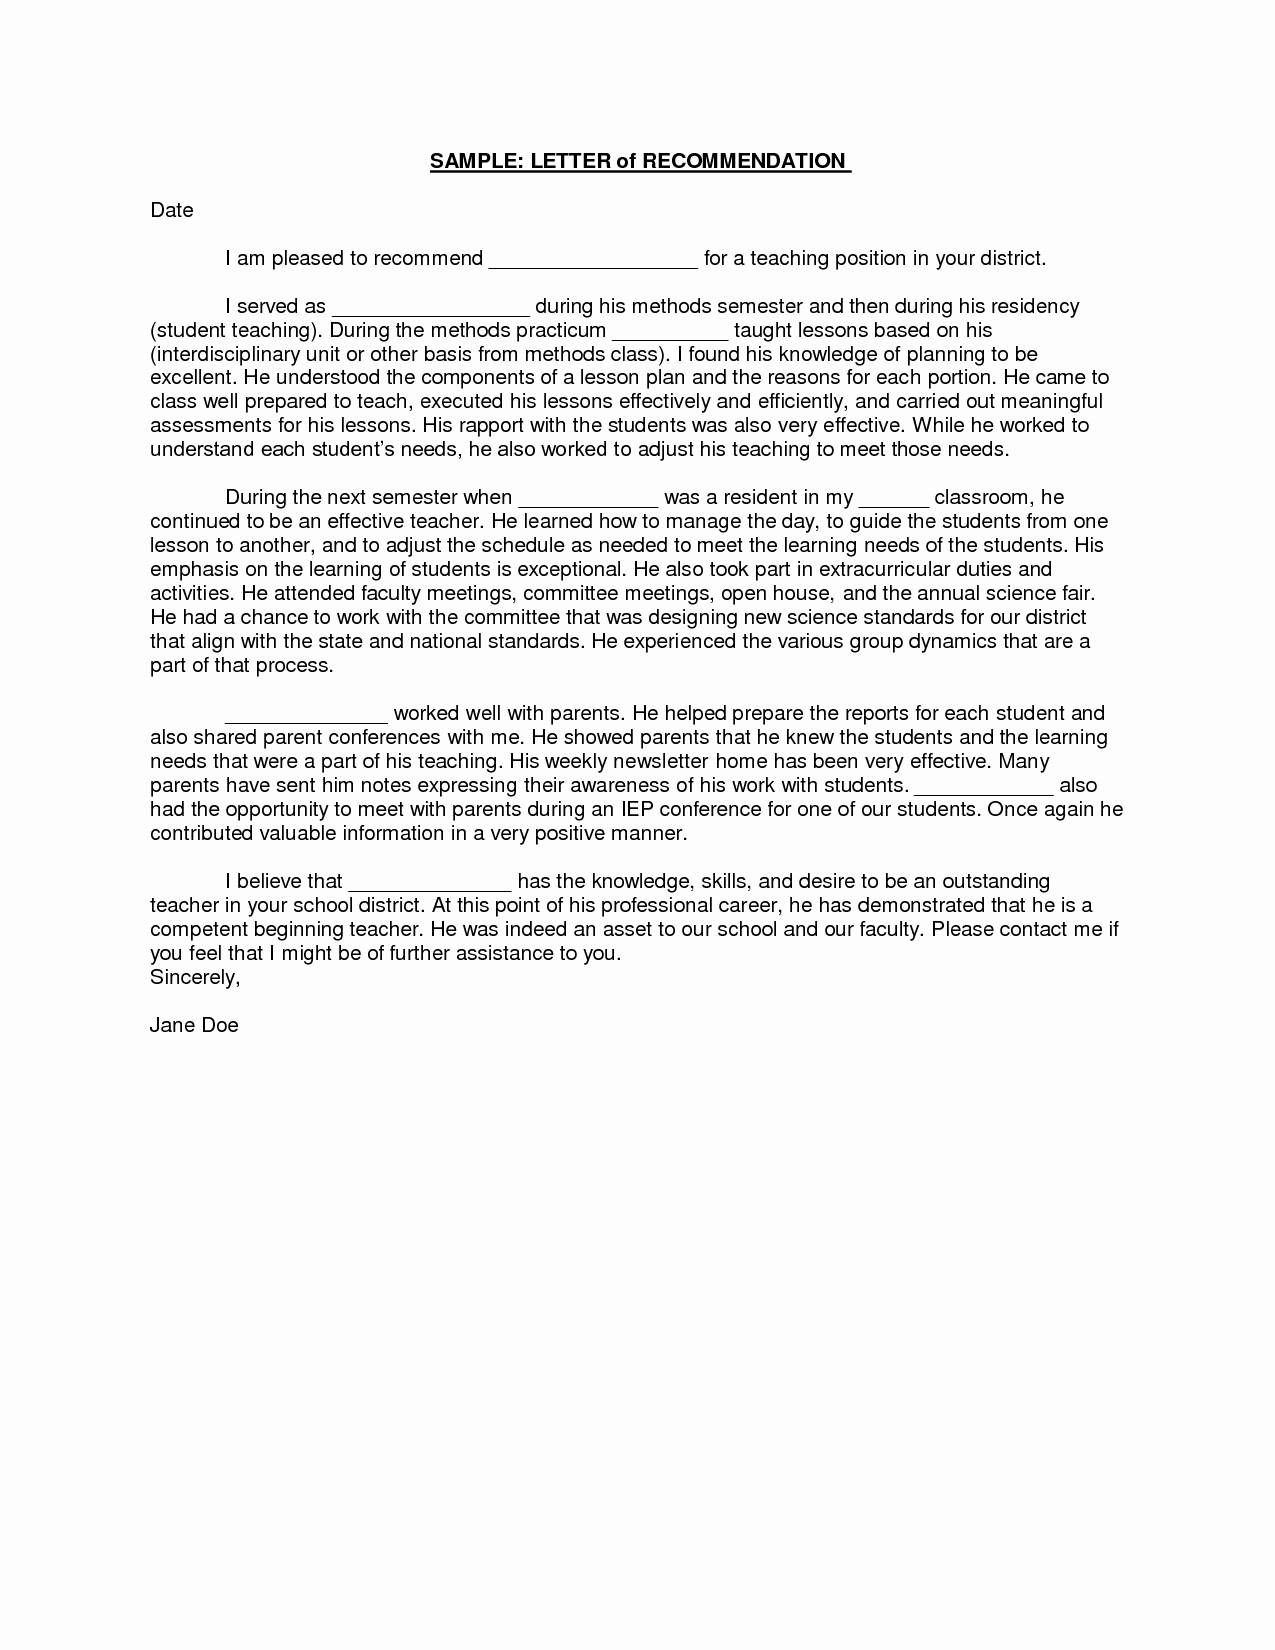 Letter Of Recommendation Template Teacher New Sample Student Teacher Re Mendation Letters V9nqmvof